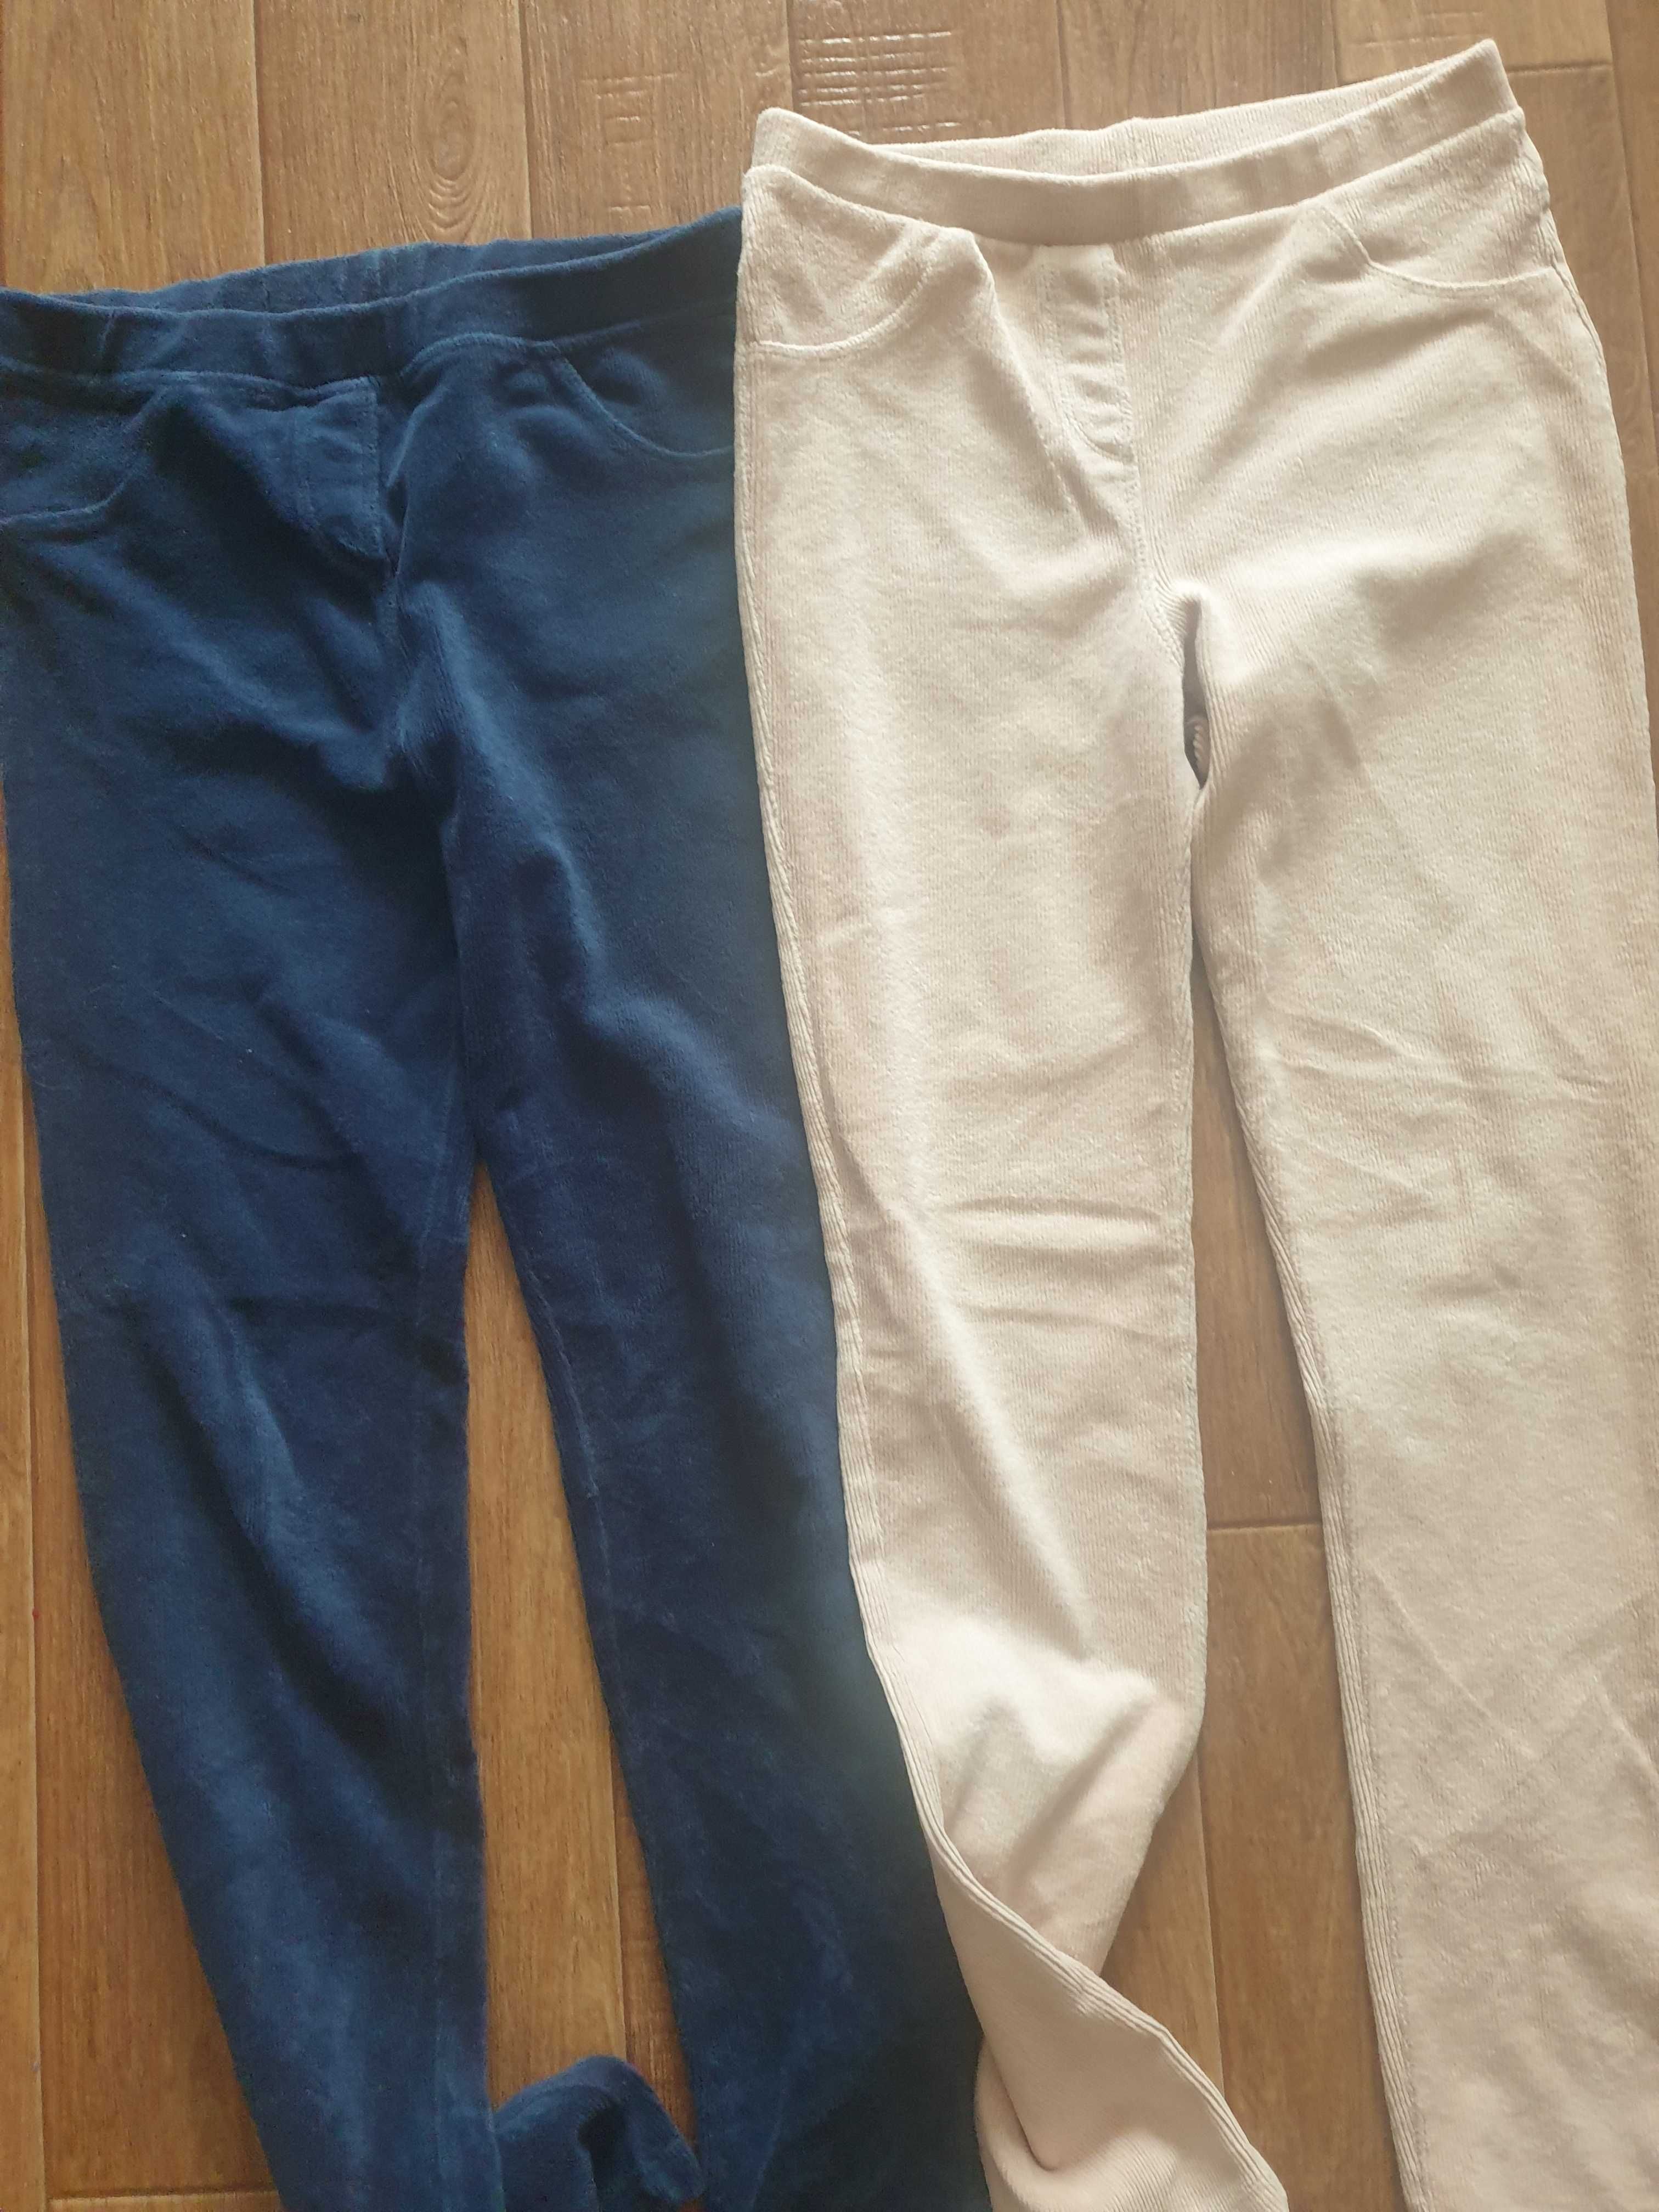 Детские джинсы для девочки и другая одежда б/у